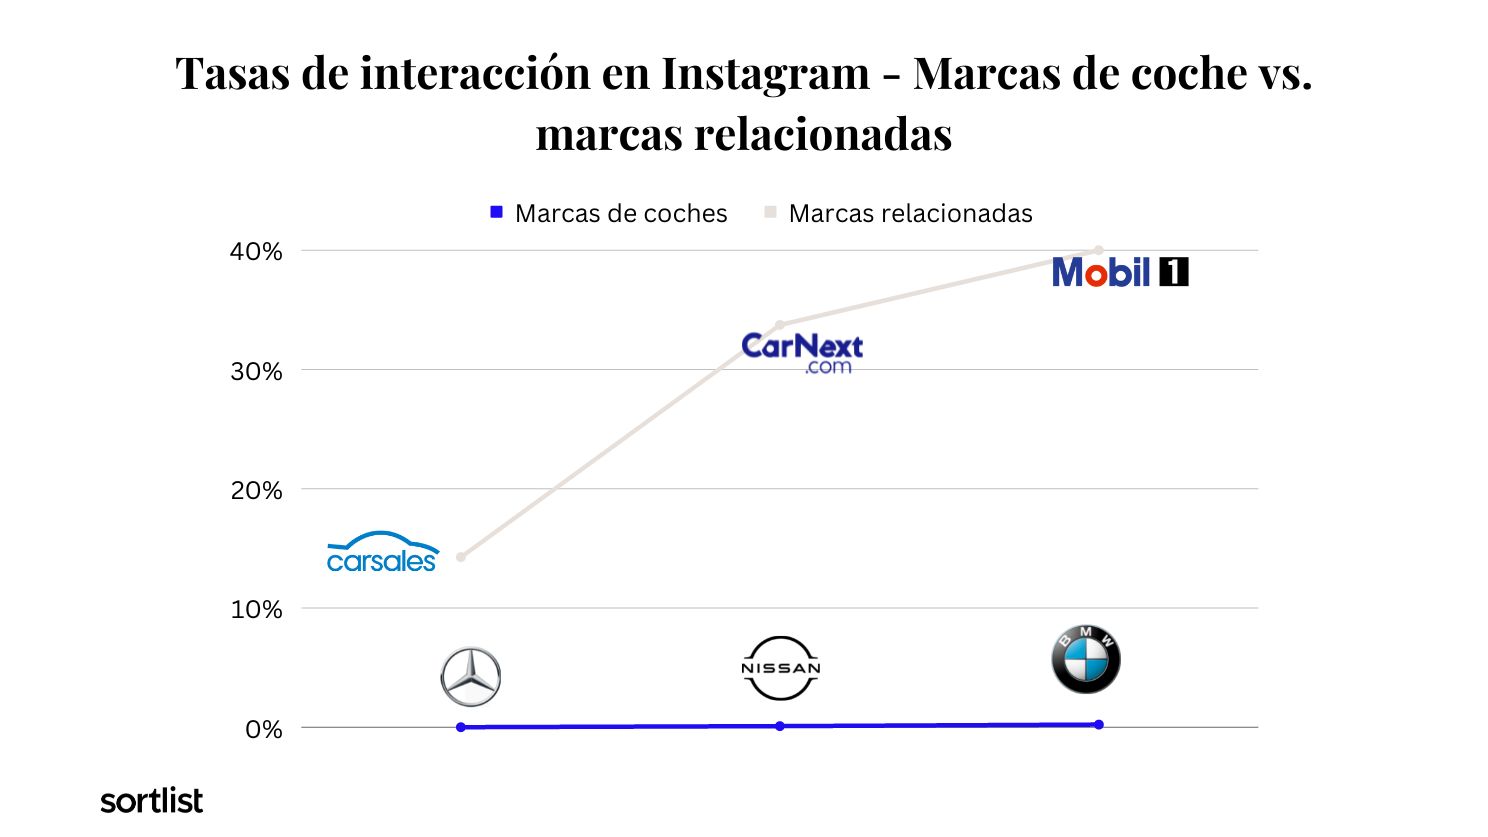 grafico de linea - Tasas de interacción en Instagram - Marcas de coche vs. marcas relacionadas